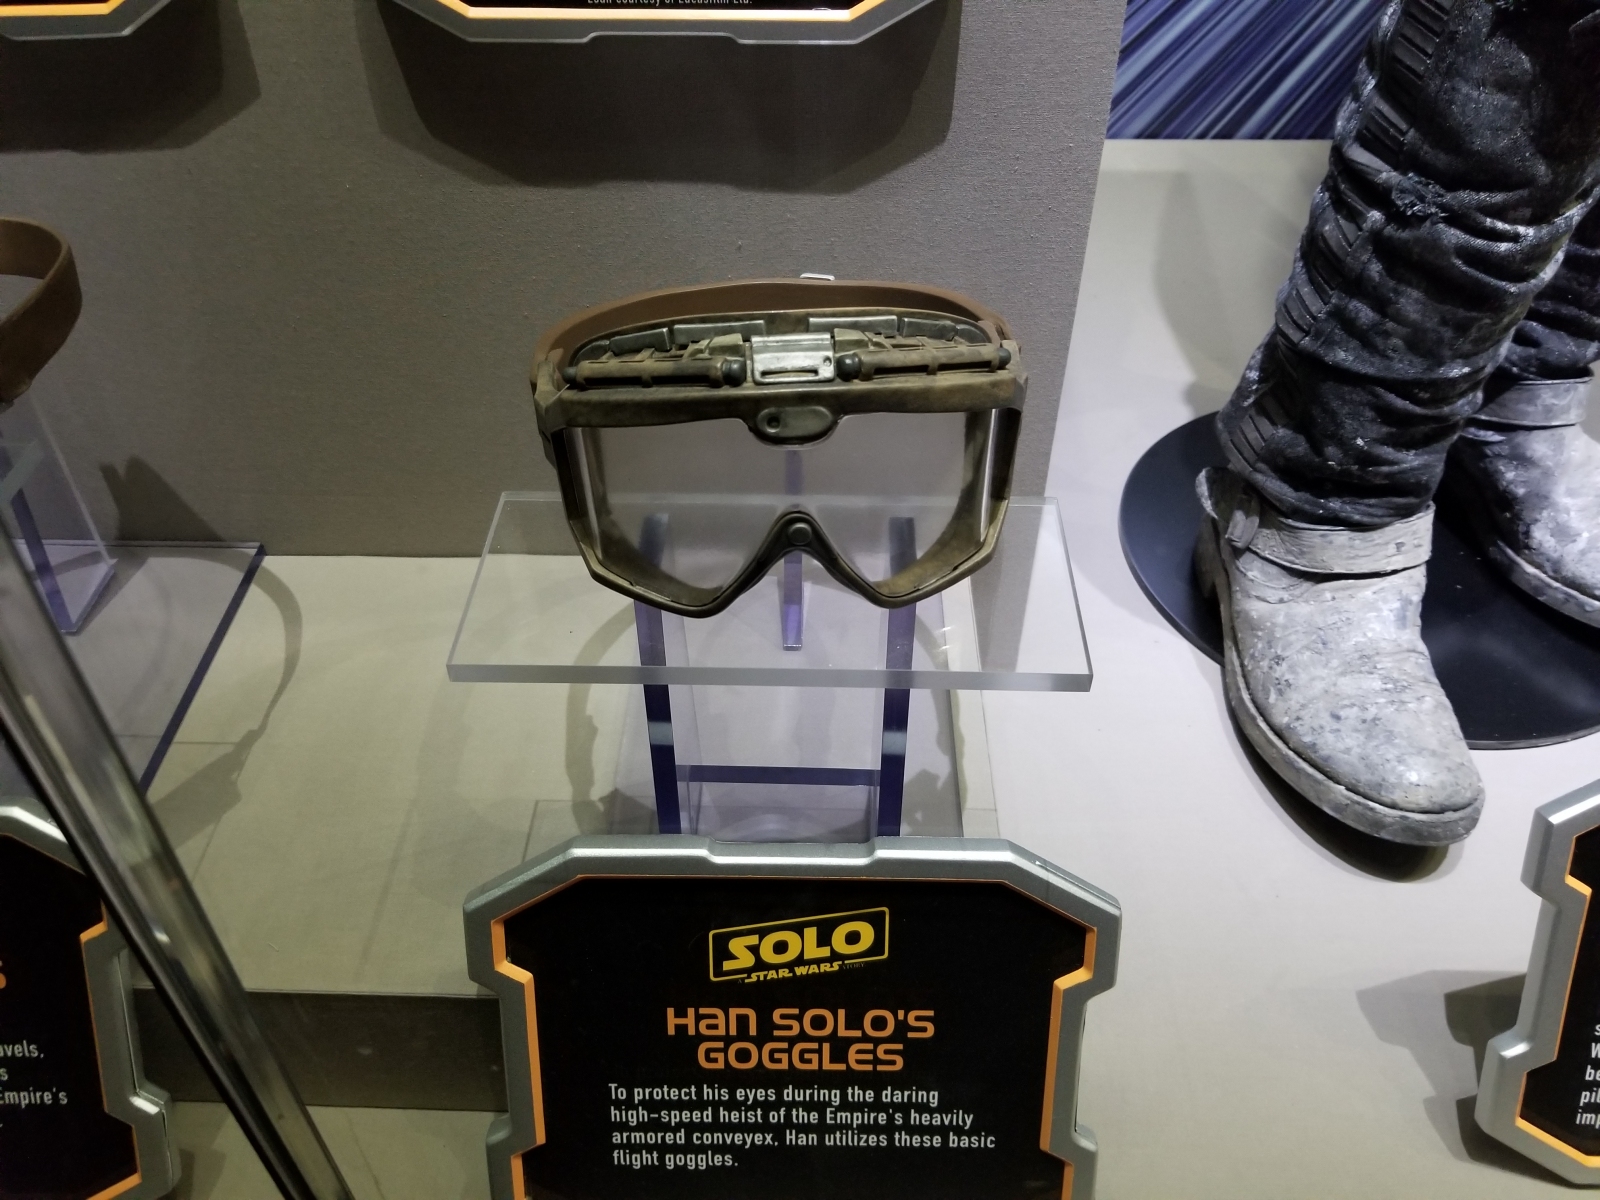 Han Solo's goggles